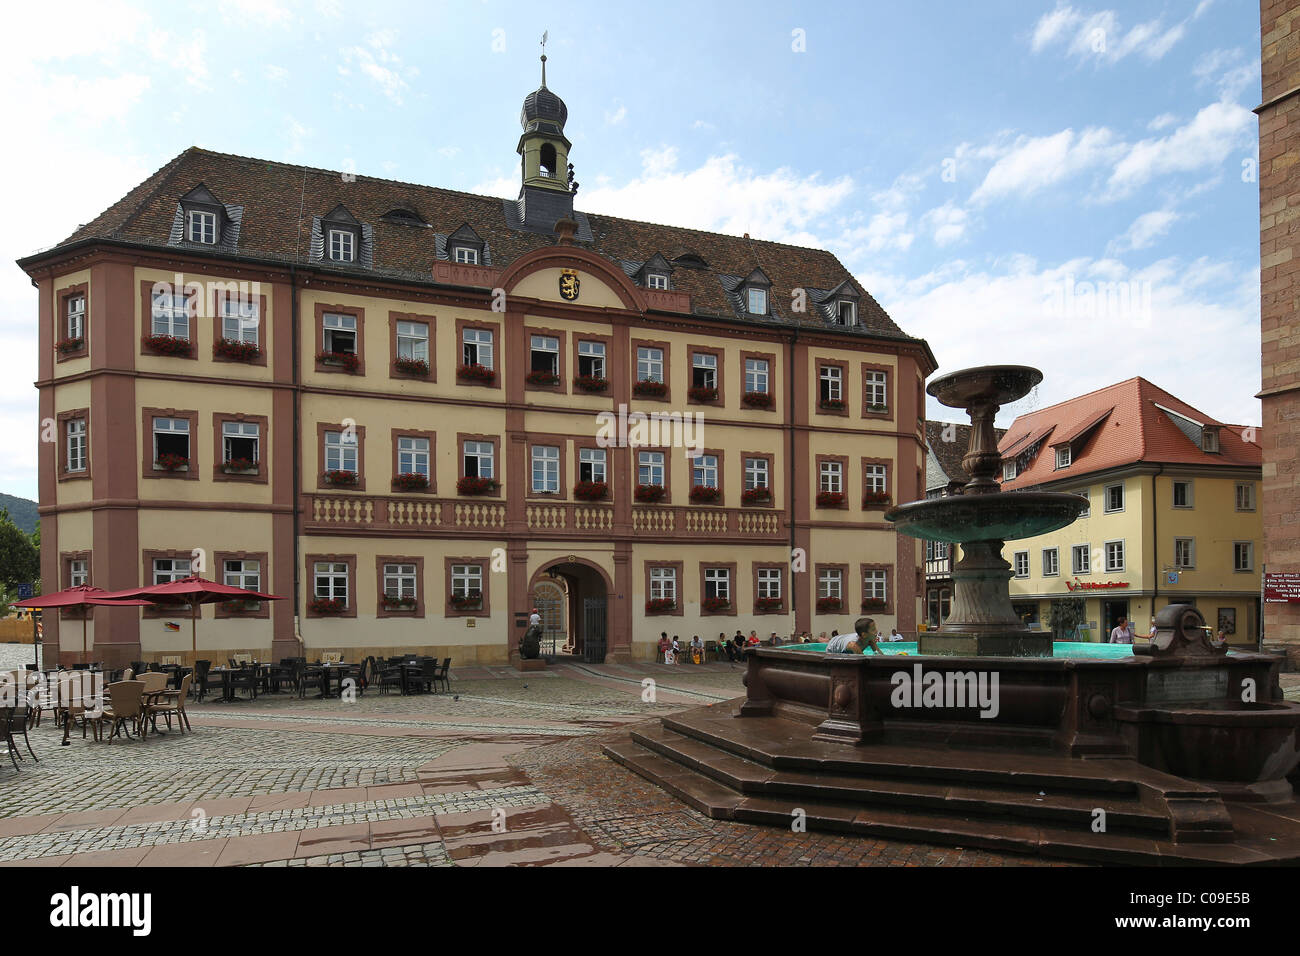 Das Rathaus in der alten Stadt Neustadt an der Weinstraße, Rheinland-Pfalz, Deutschland, Europa Stockfoto